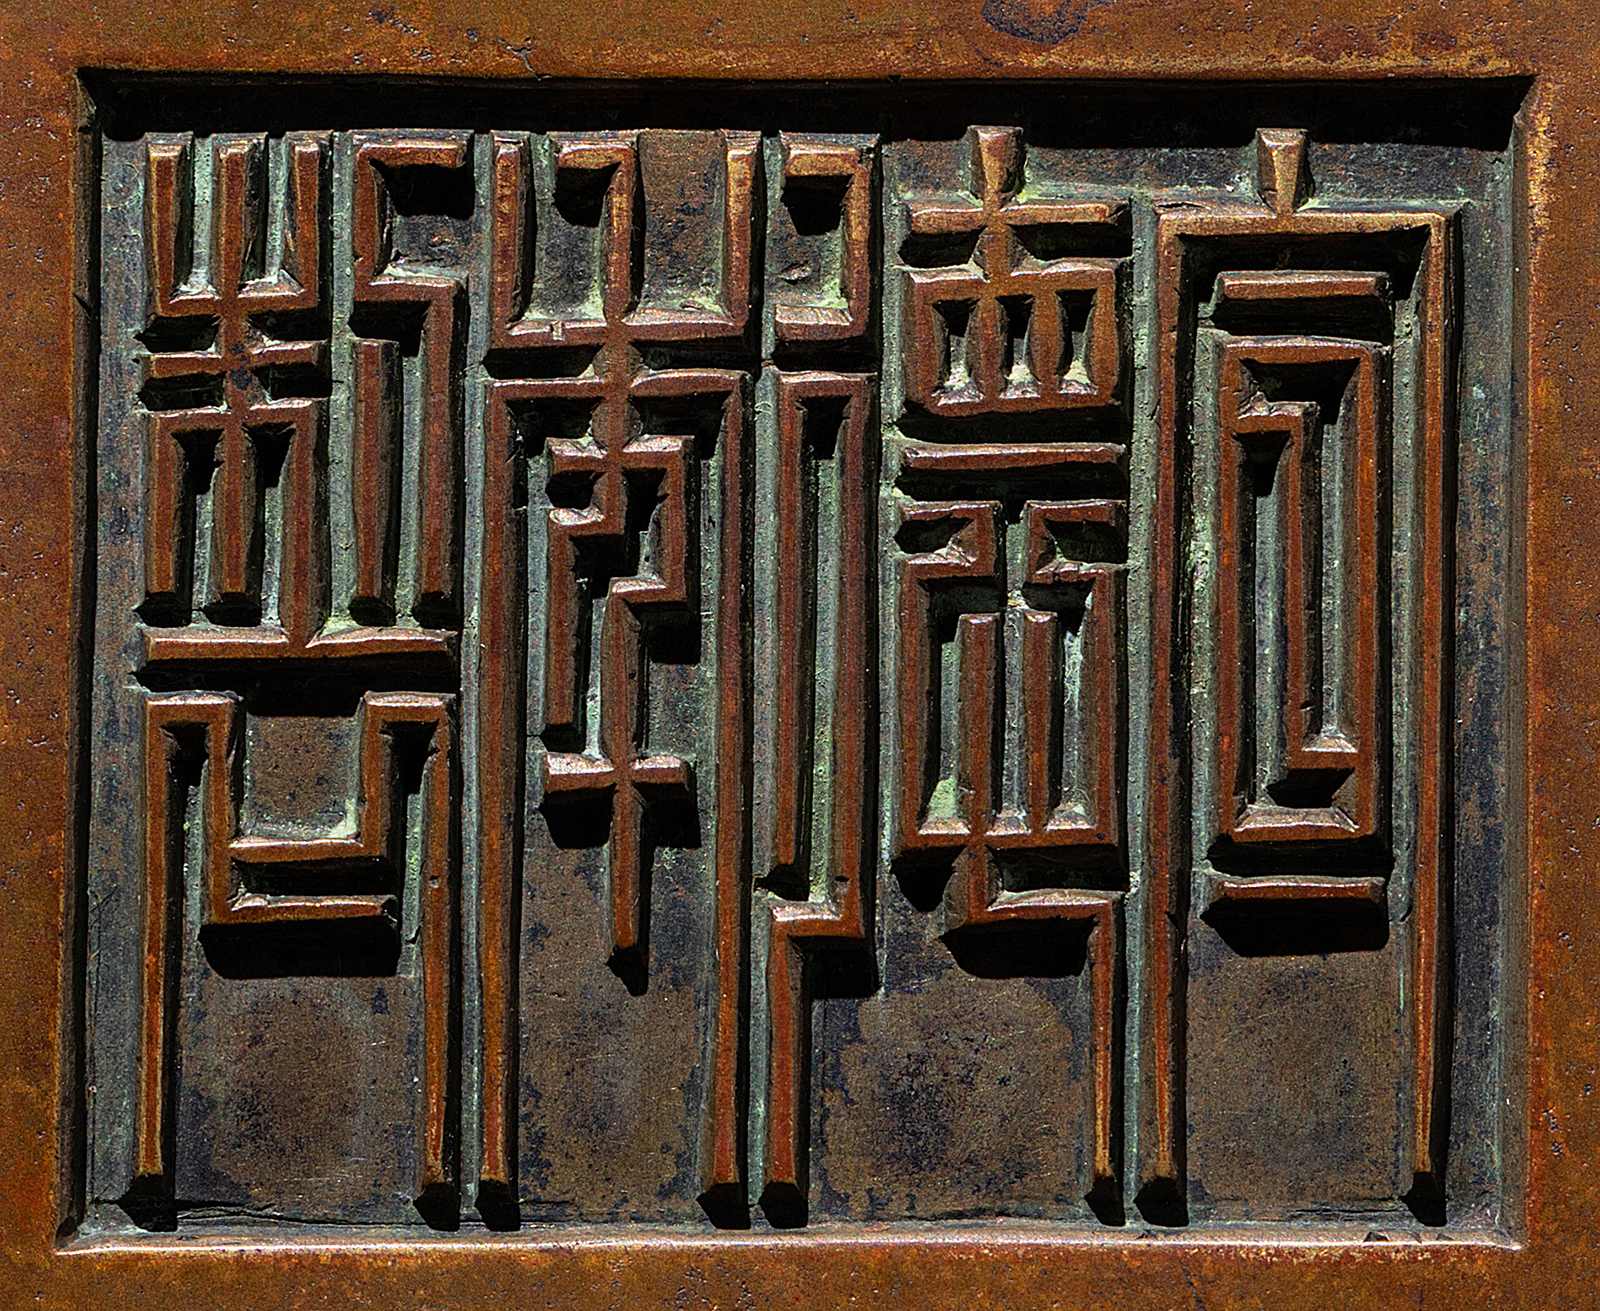 5cm  重:2361g拍品描述款识:宣德年制篆书款香炉在不同的历史年代